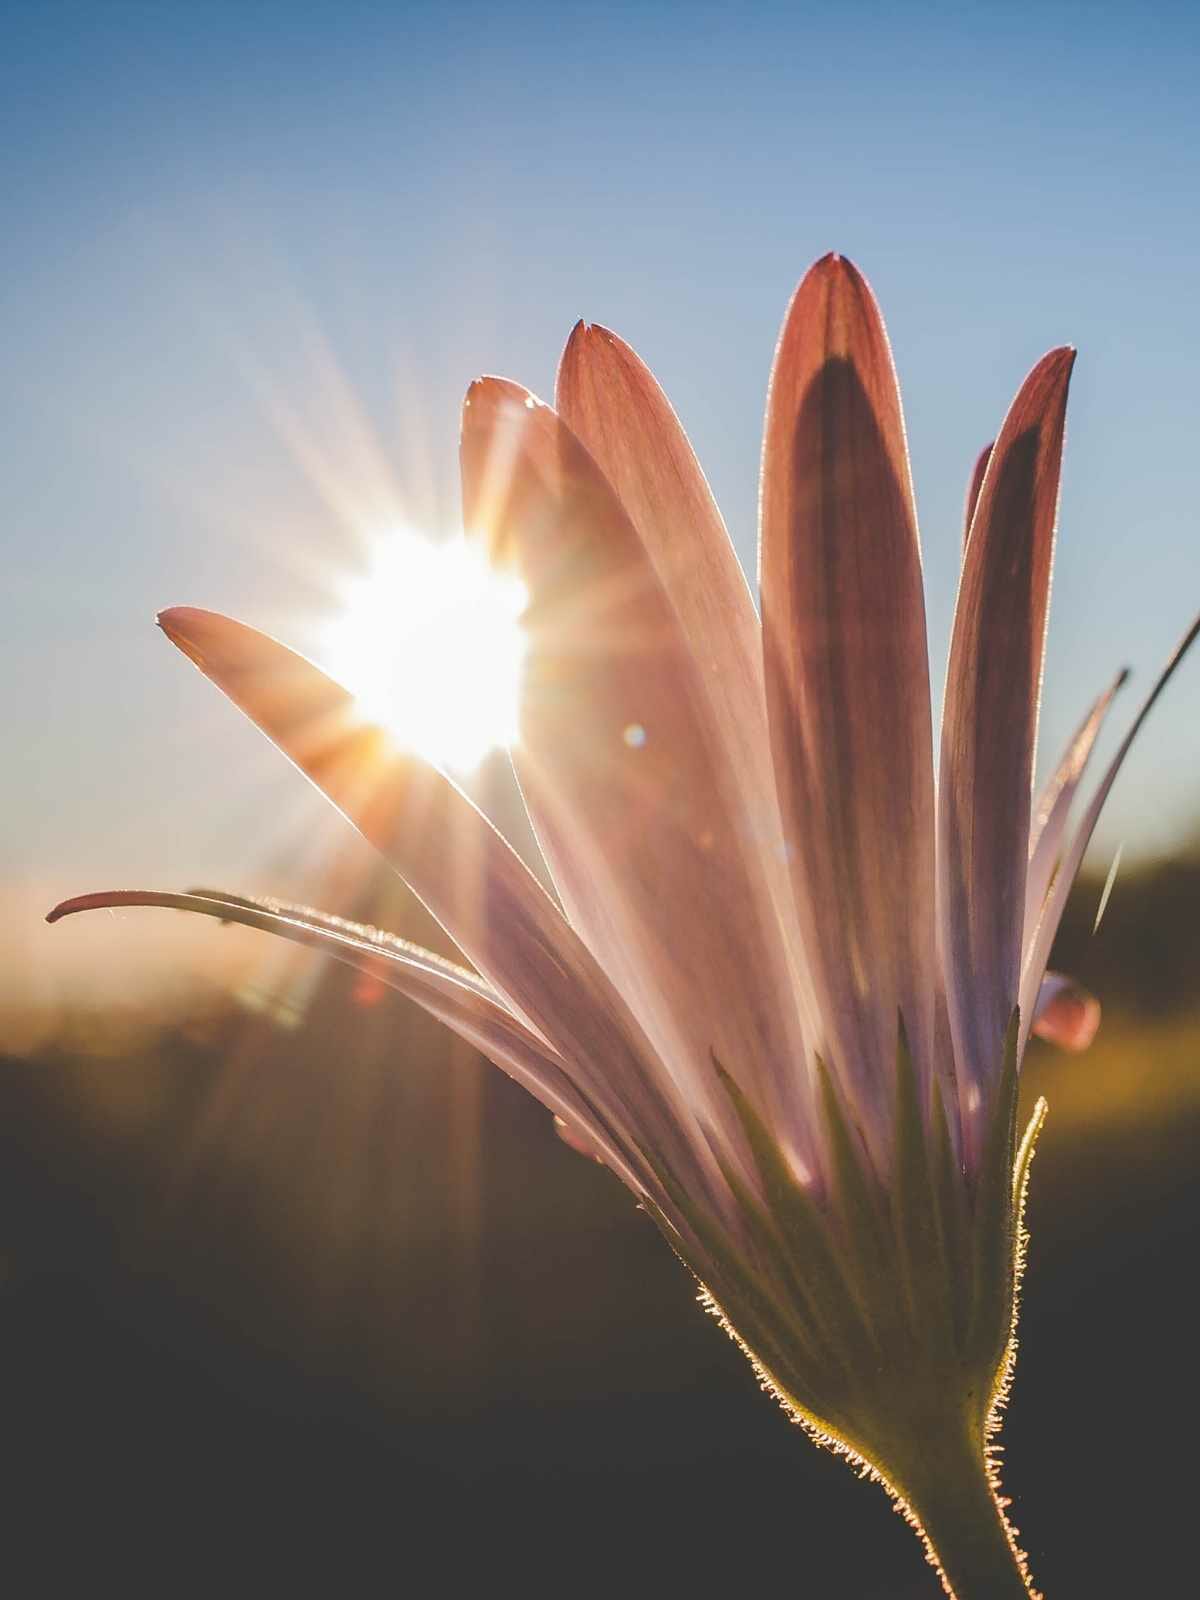 sunlight through a flower